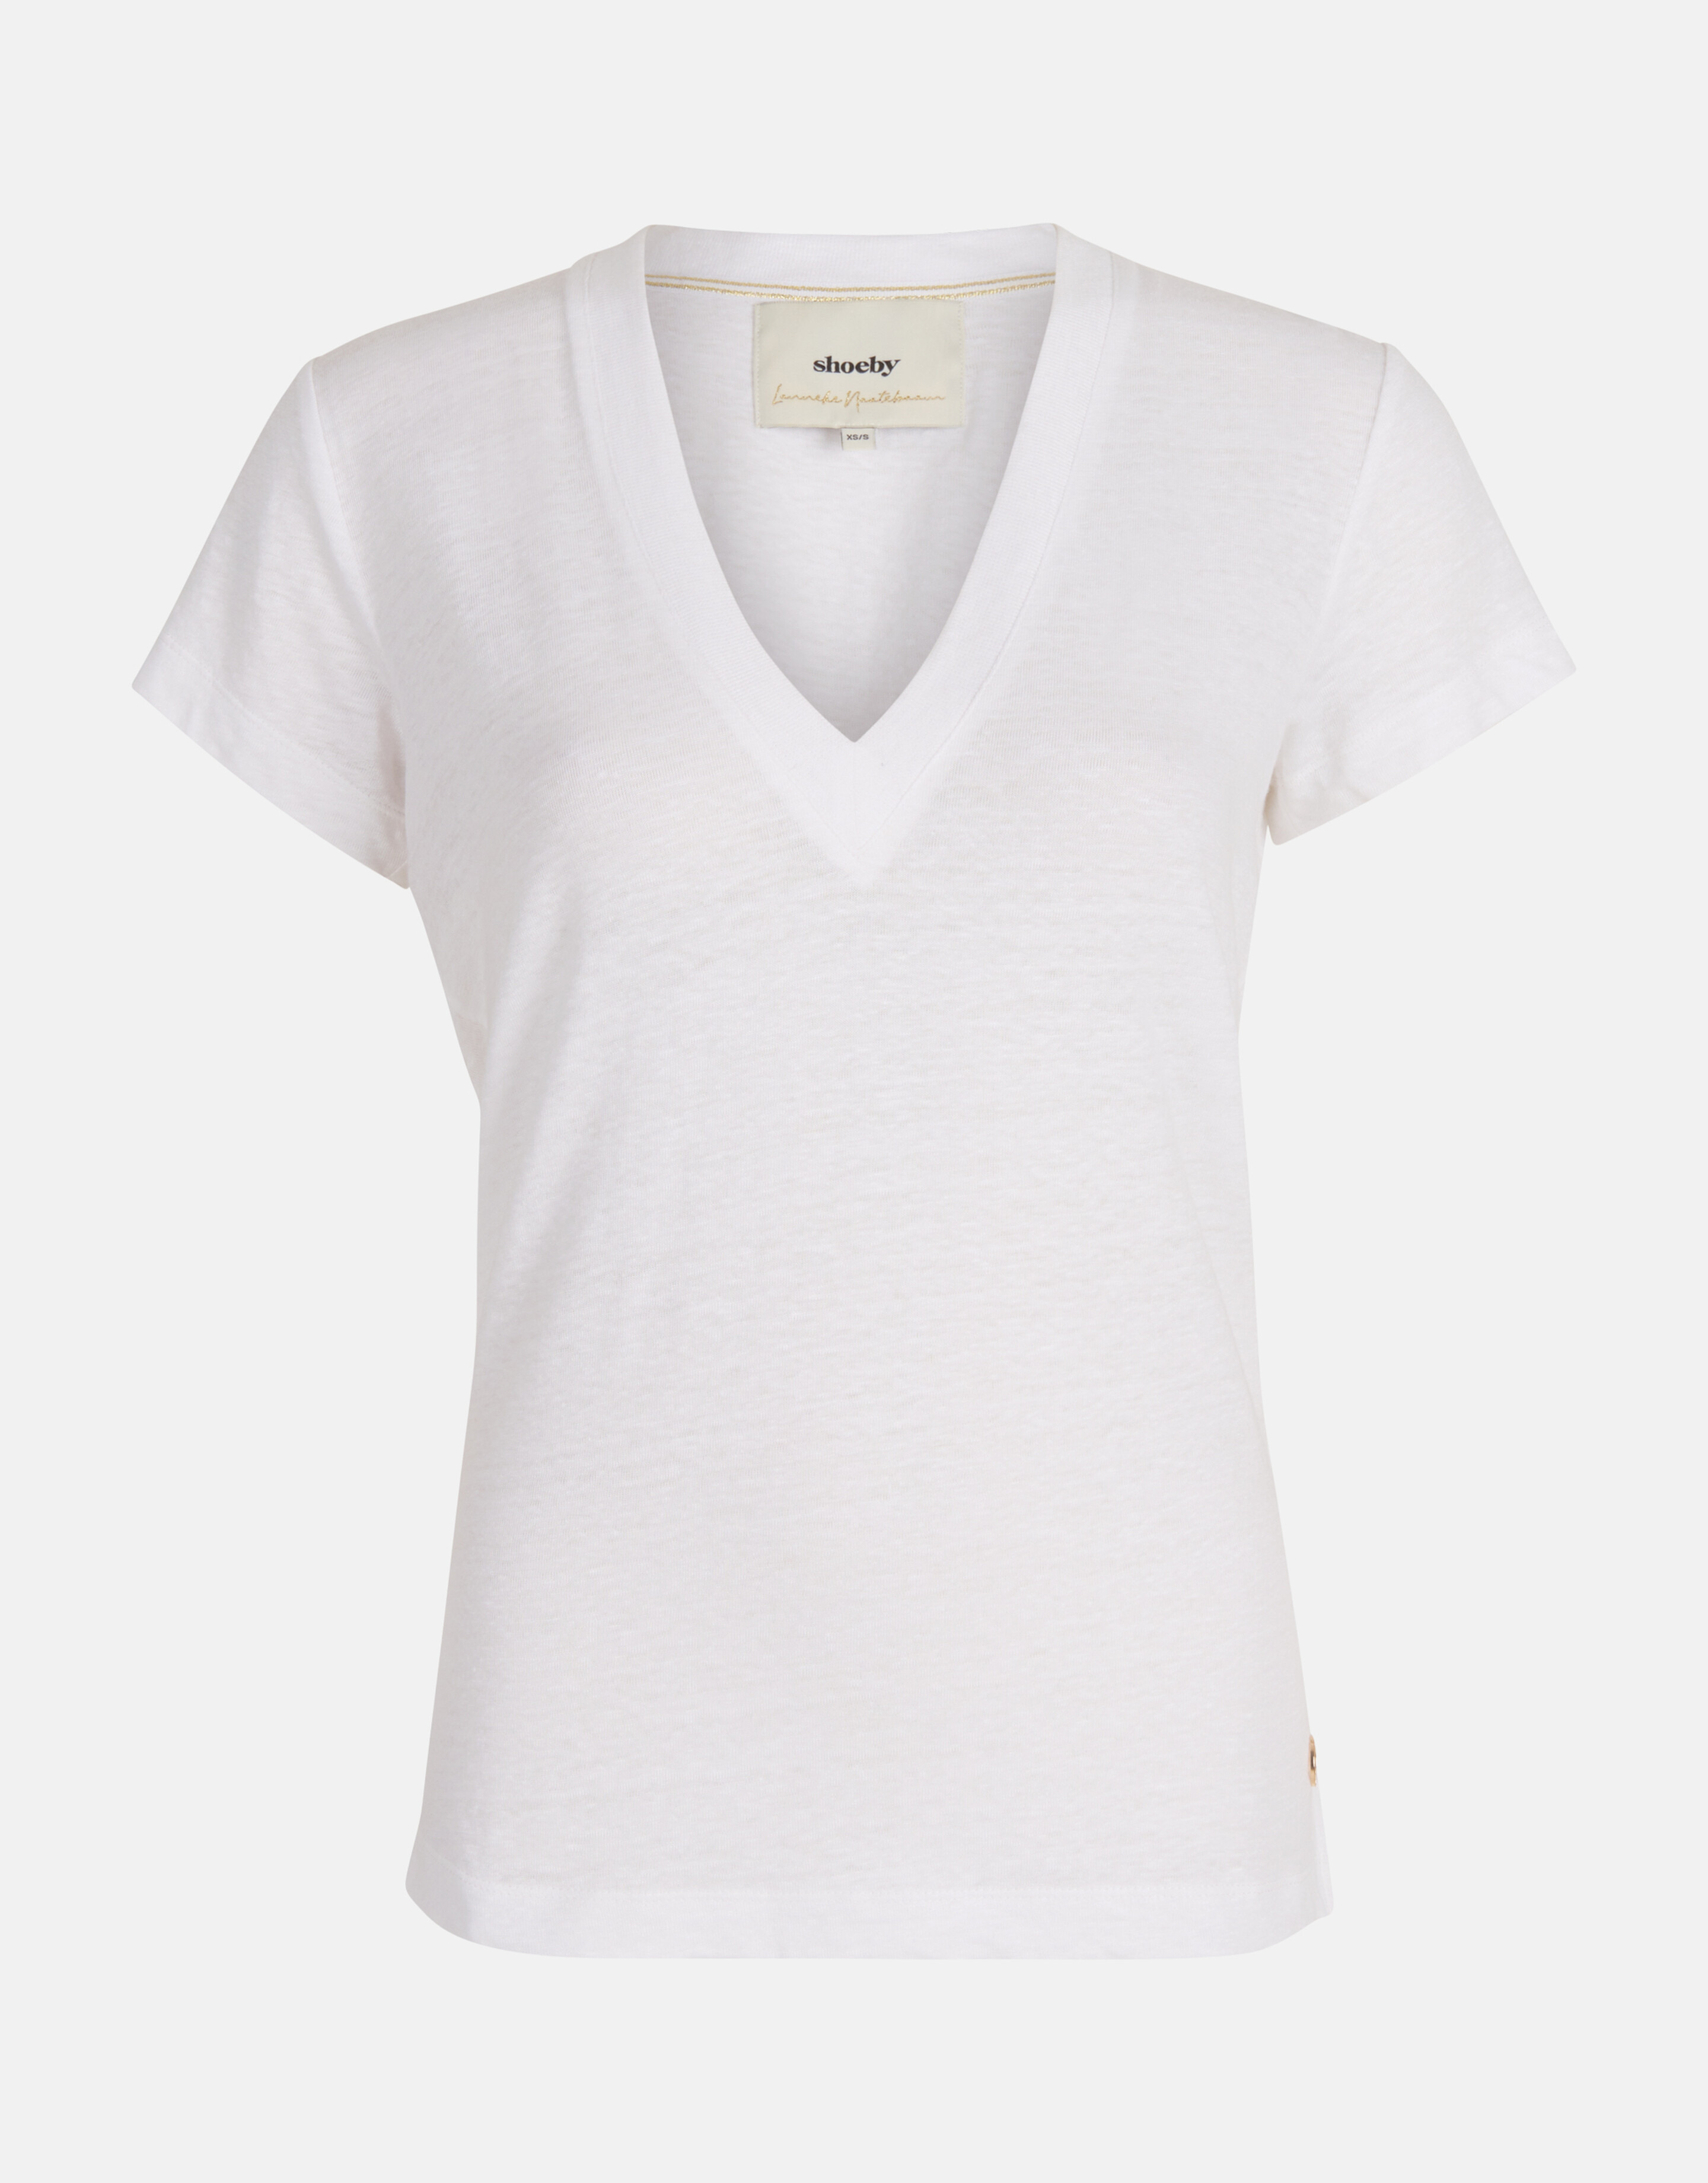 Leinen-T-Shirt Weiß von Lonneke SHOEBY WOMEN